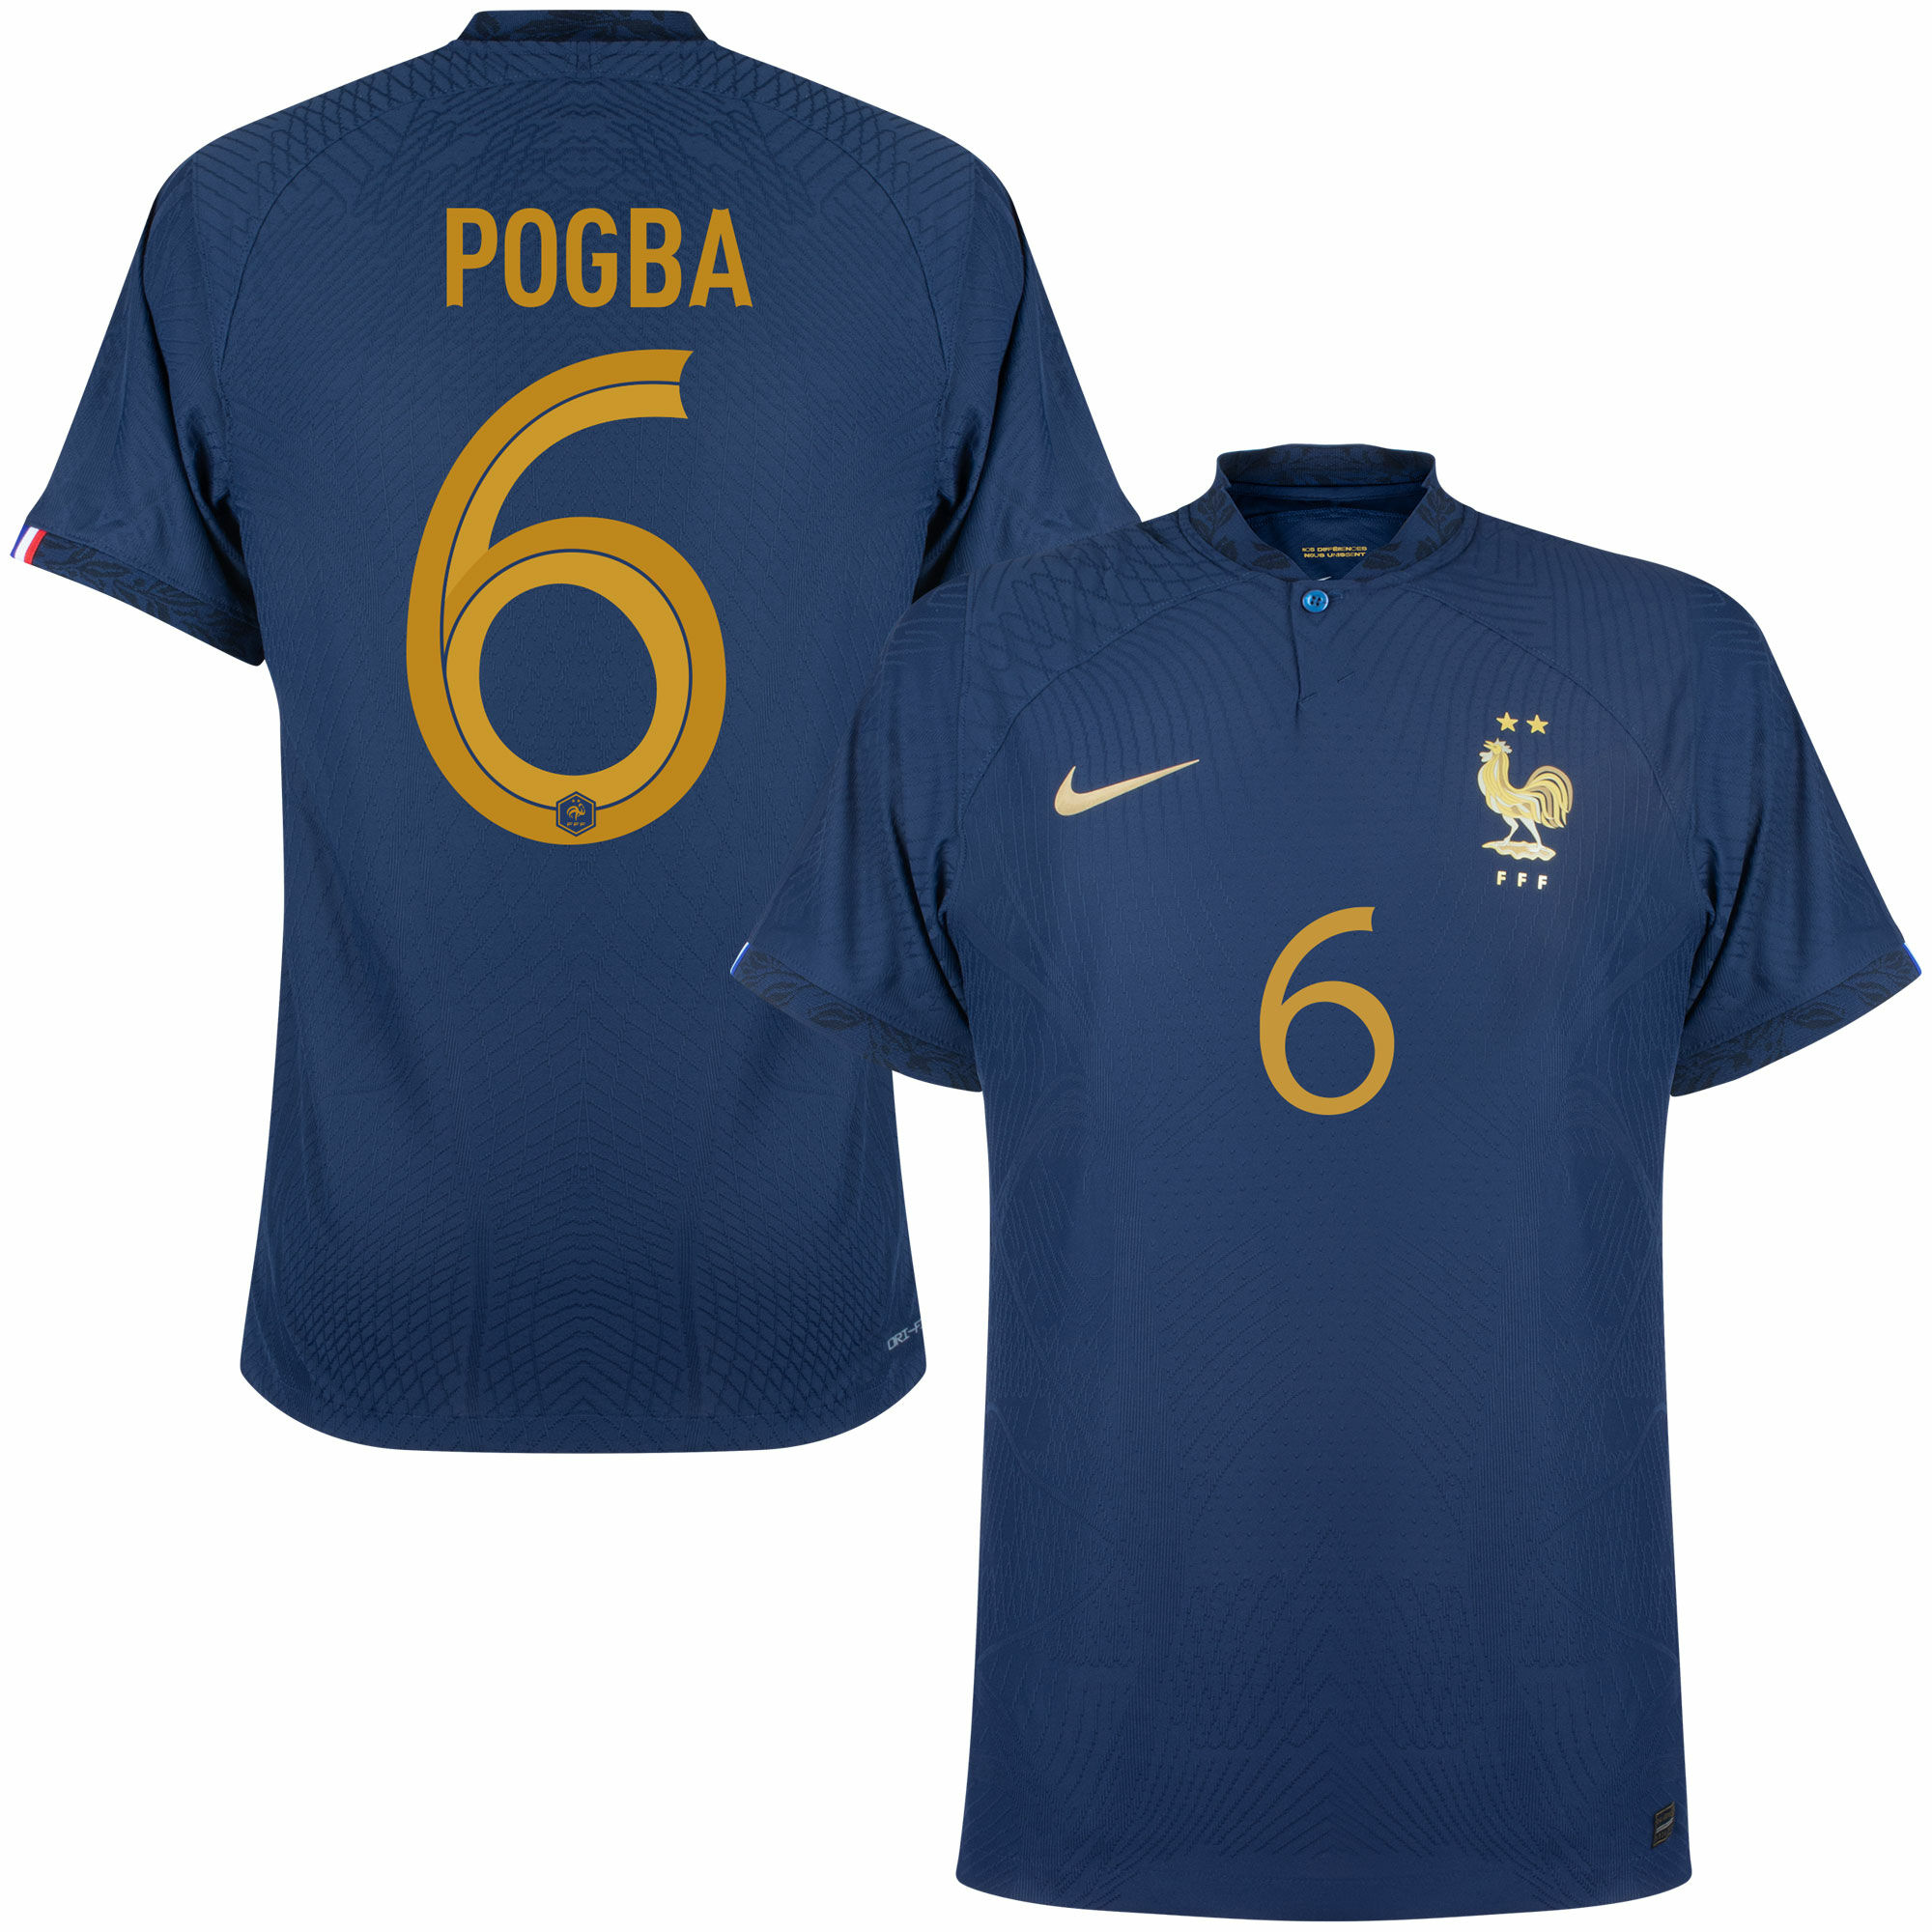 Francie - Dres fotbalový "Match" - oficiální potisk, číslo 6, domácí, sezóna 2022/23, Paul Pogba, Dri-FIT ADV, modrý